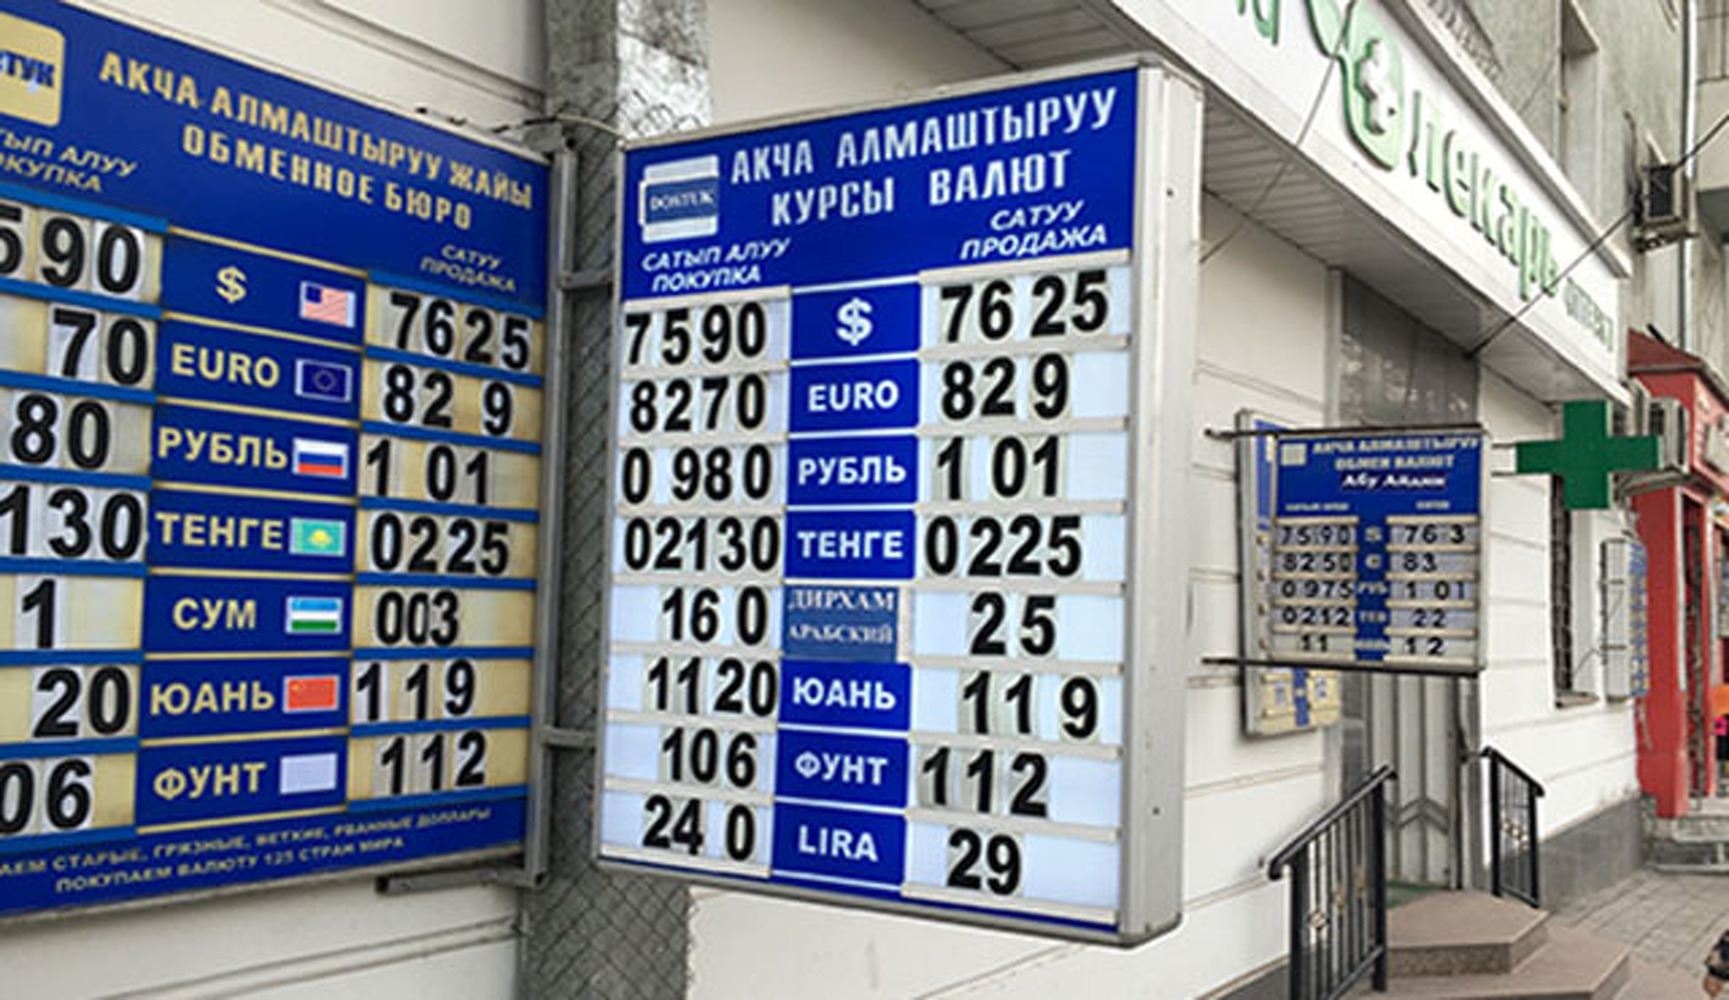 Рубль на сом киргизия сегодня бишкек. Курс рубля. Курс валют. Обменный пунк Киргизии. Курс обмена валют в Бишкеке.